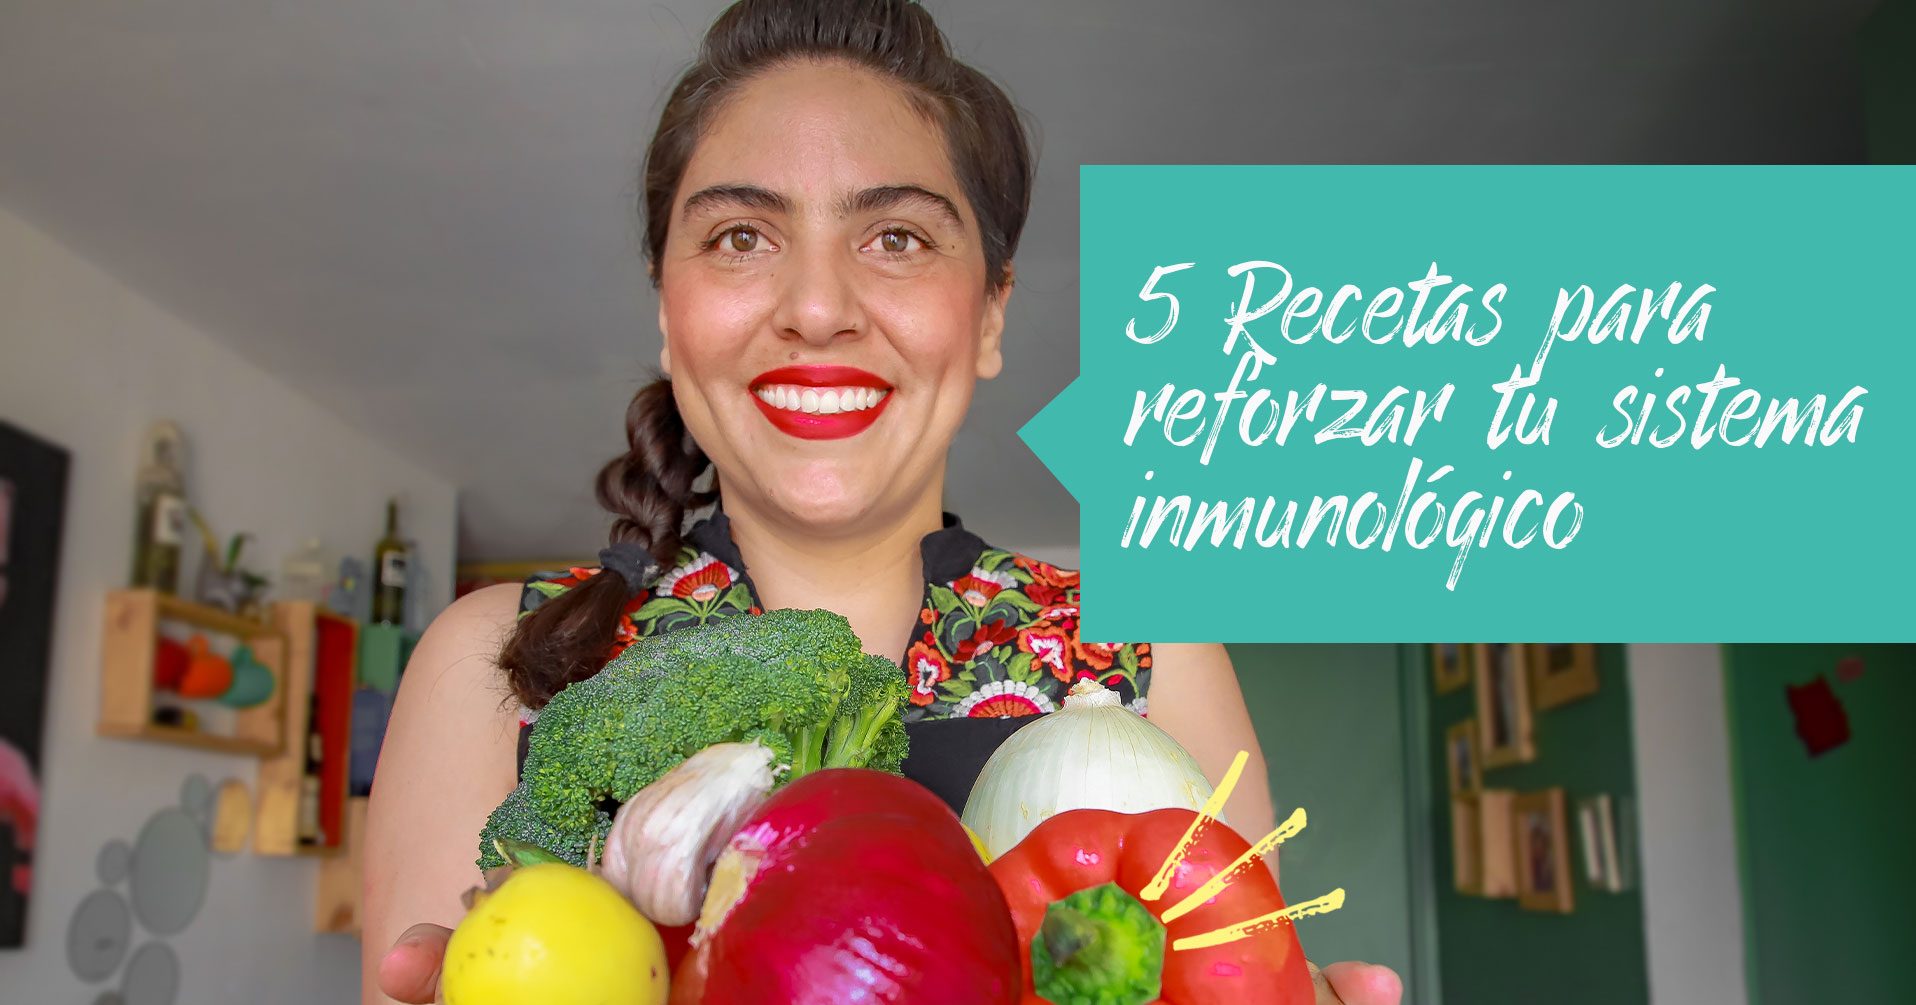 5 Recetas para reforzar tu sistema inmunológico | Love Veg